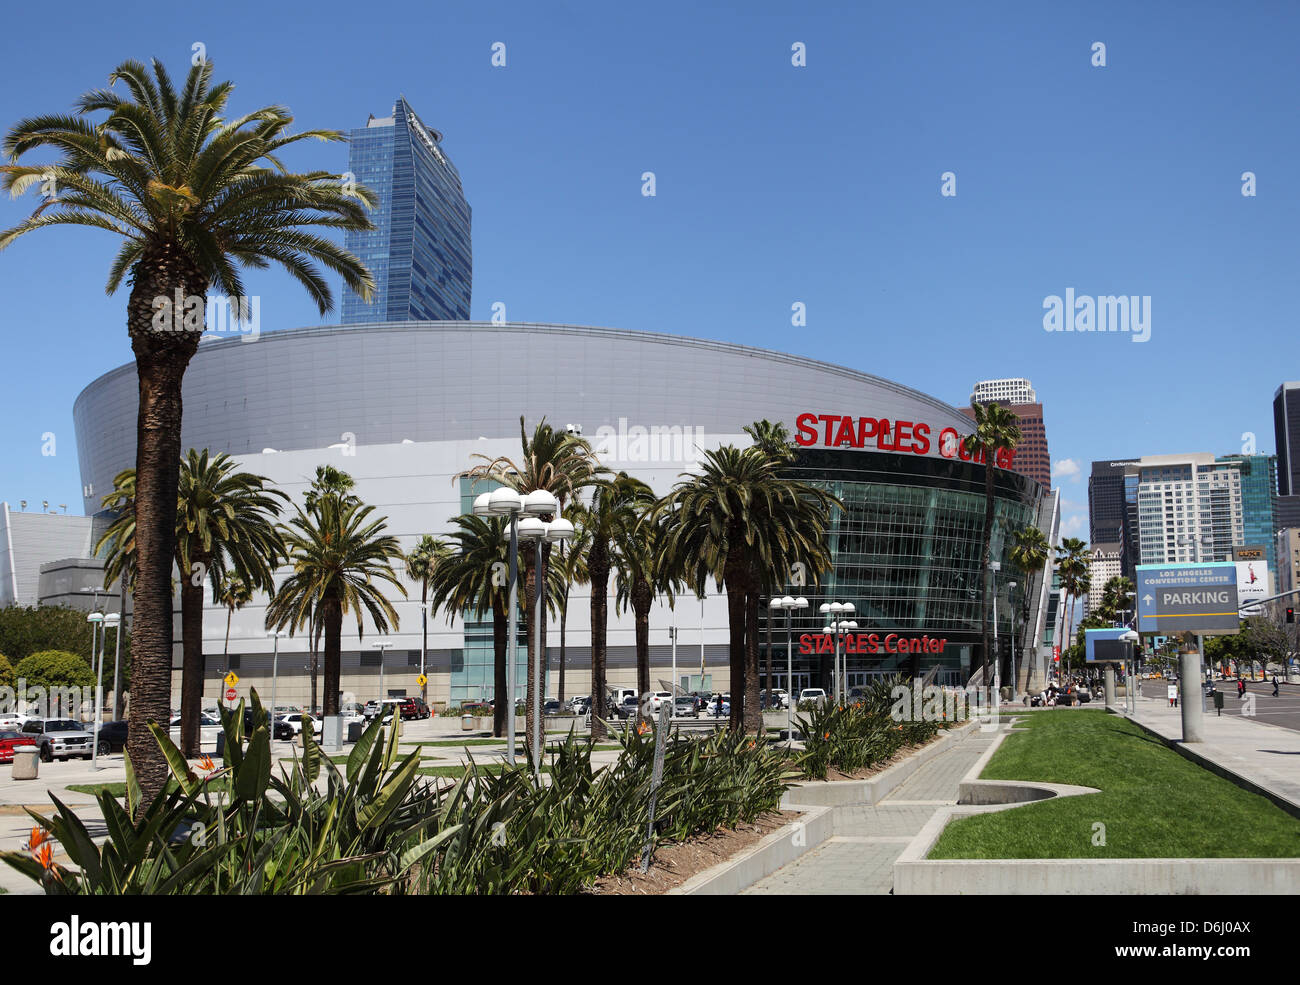 LOS ANGELES, CALIFORNIE, USA - 16 avril 2013 - Le Staples Center dans le centre-ville de Los Angeles le 16 avril, 2013 Banque D'Images